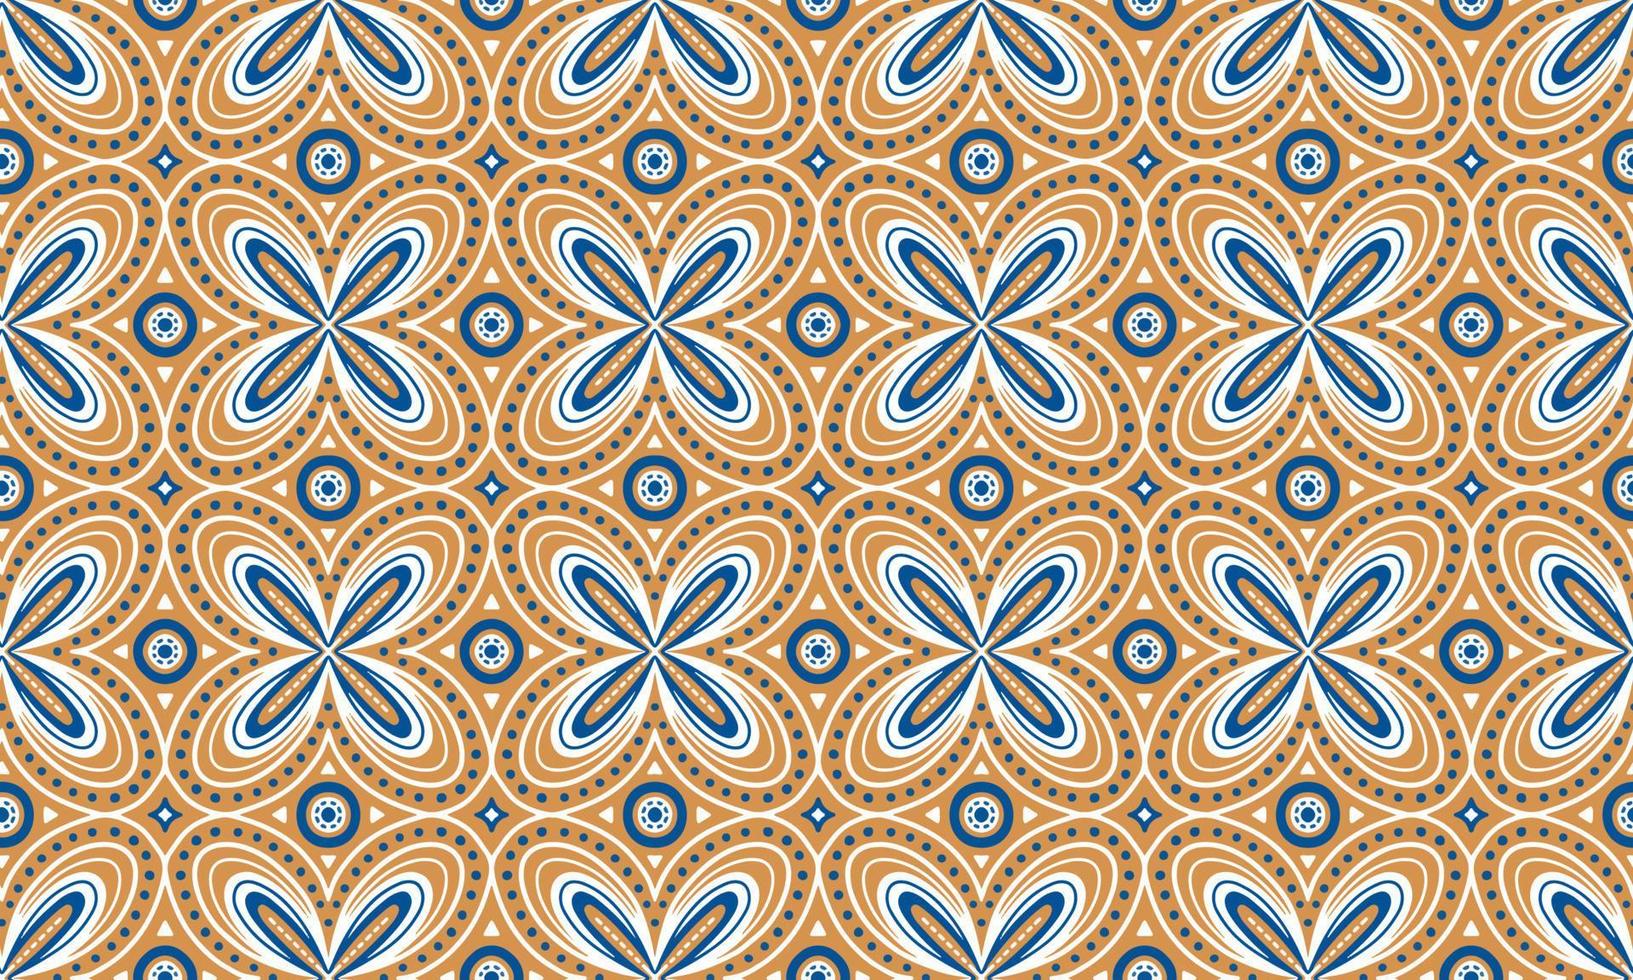 Ethnique abstrait fond mignon bleu jaune géométrique tribal ikat motif folklorique arabe oriental natif motif traditionnel Design Tapis Papier peint Vêtements Tissu Emballage Impression Batik Folk Tricot Vecteur